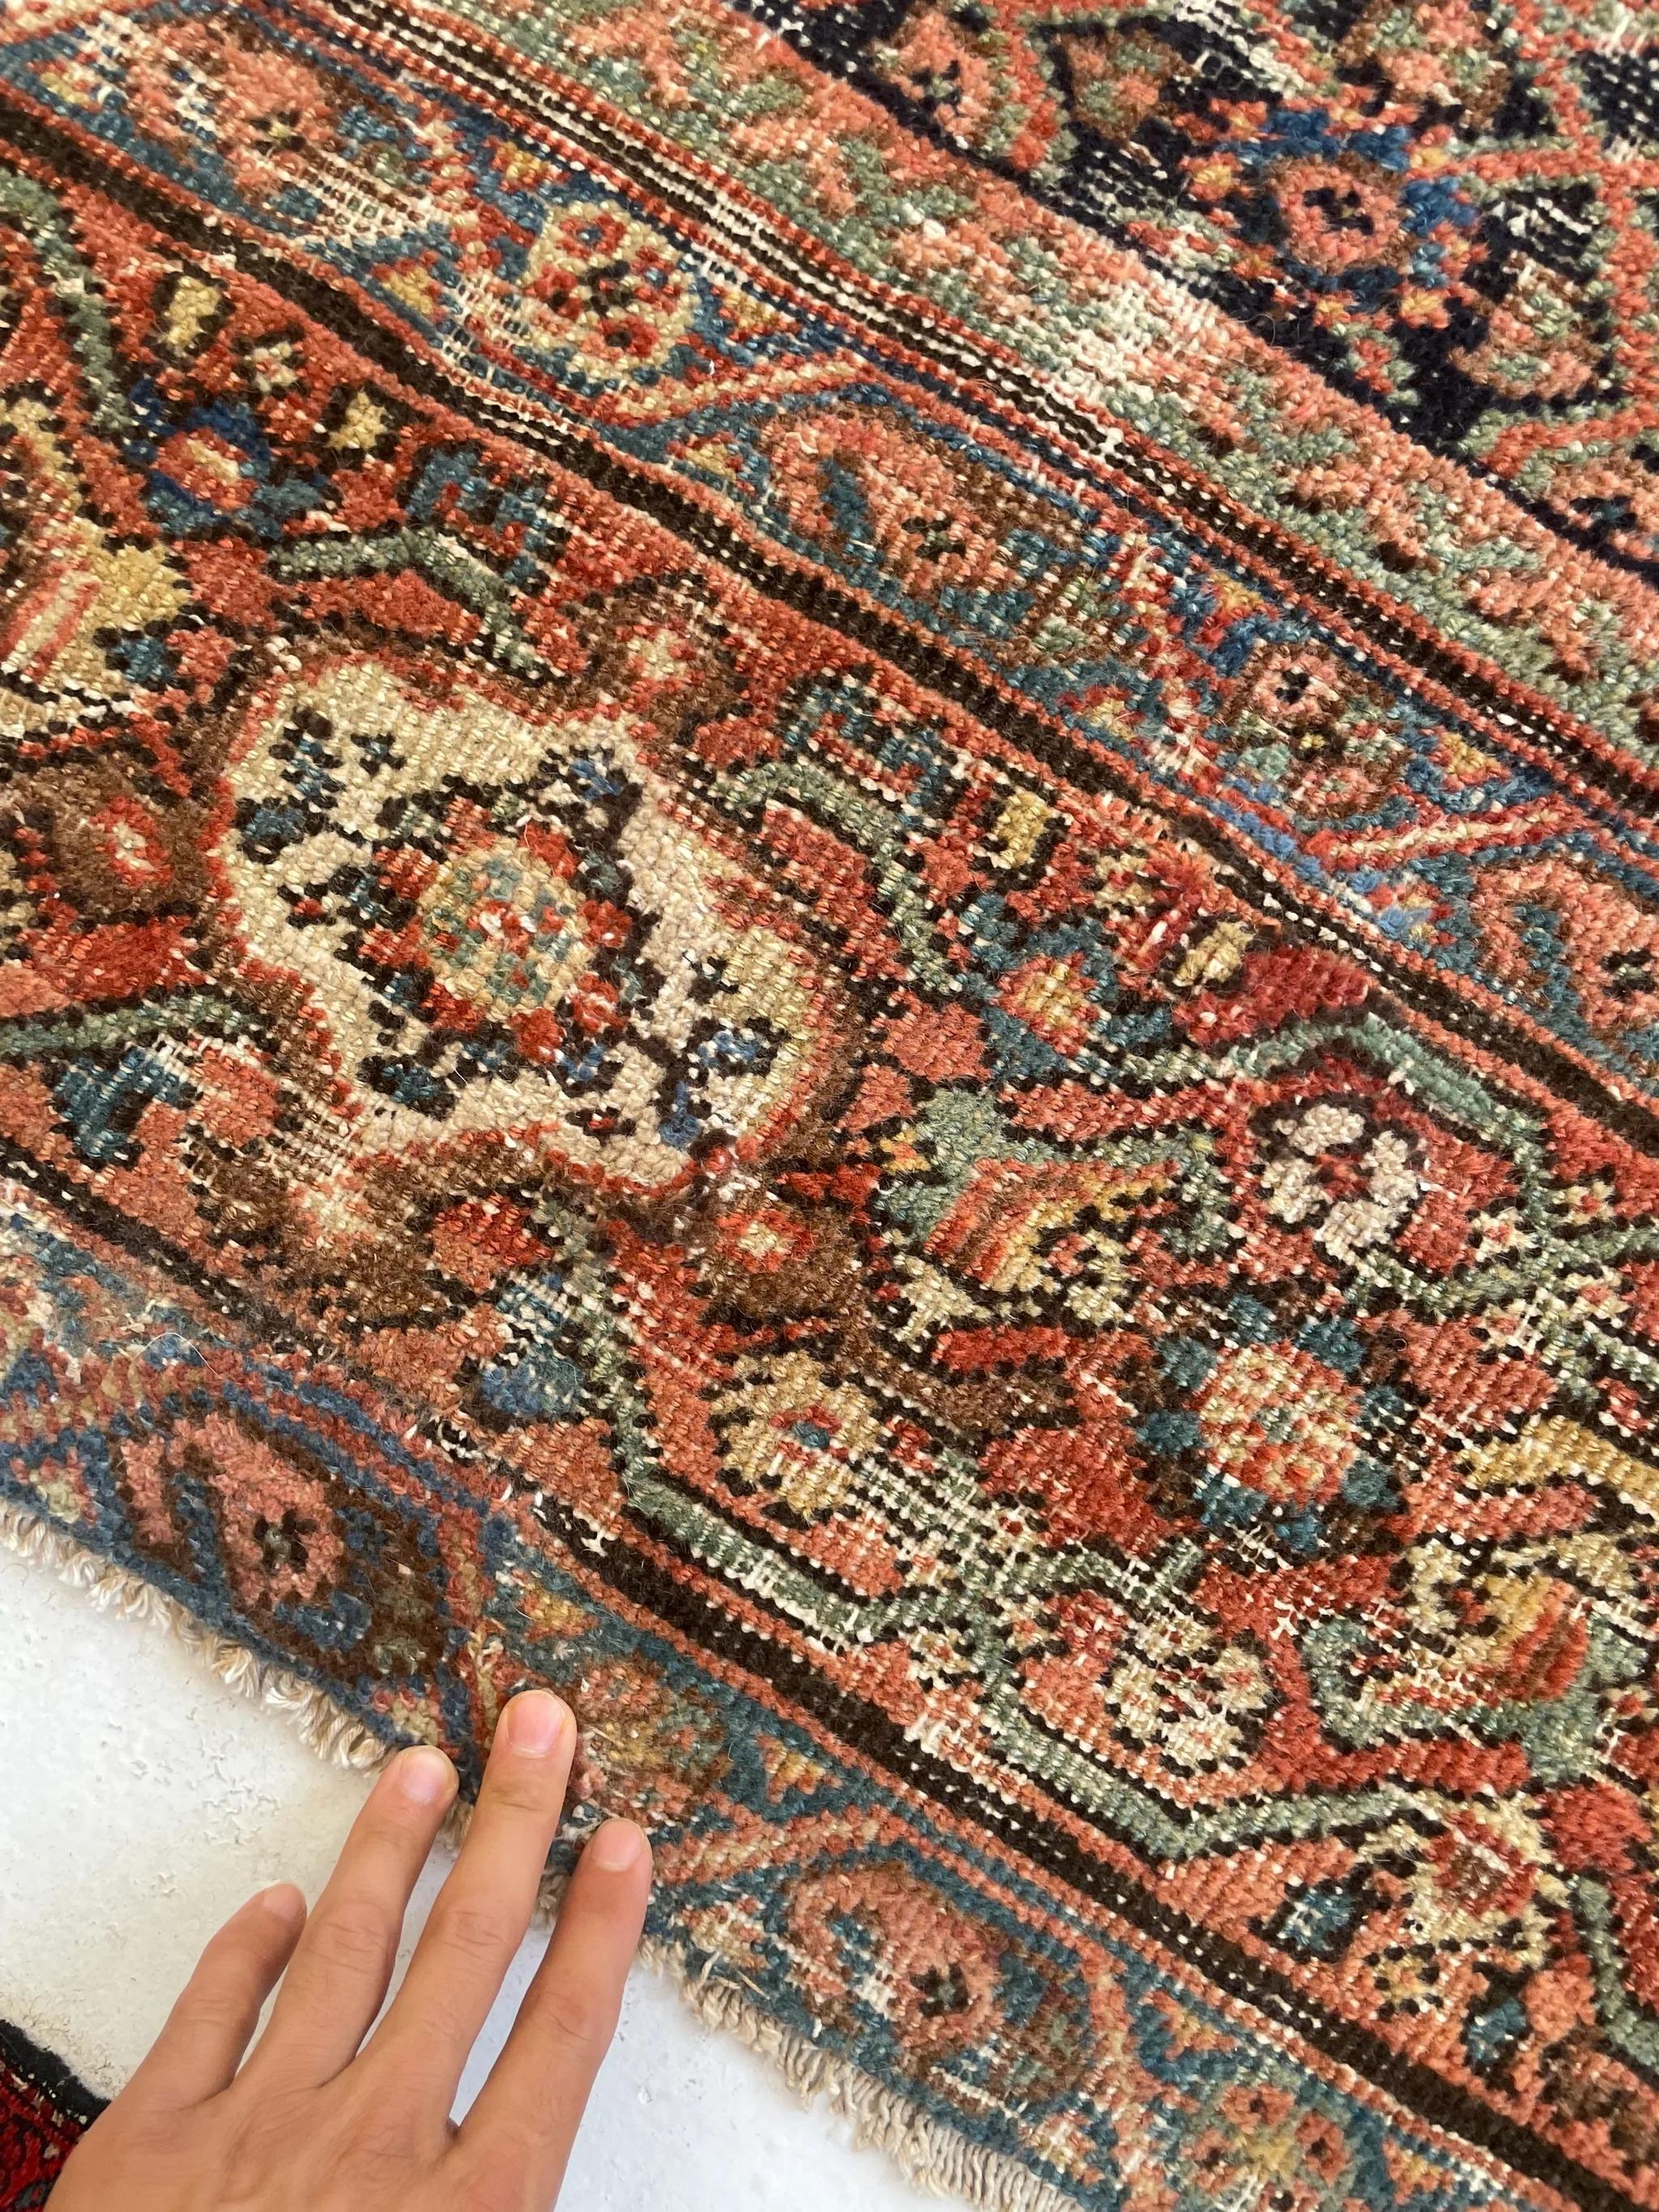 Antique Persian Carpet Rug in Deep Old-World Indigo, circa 1900-1915's For Sale 8